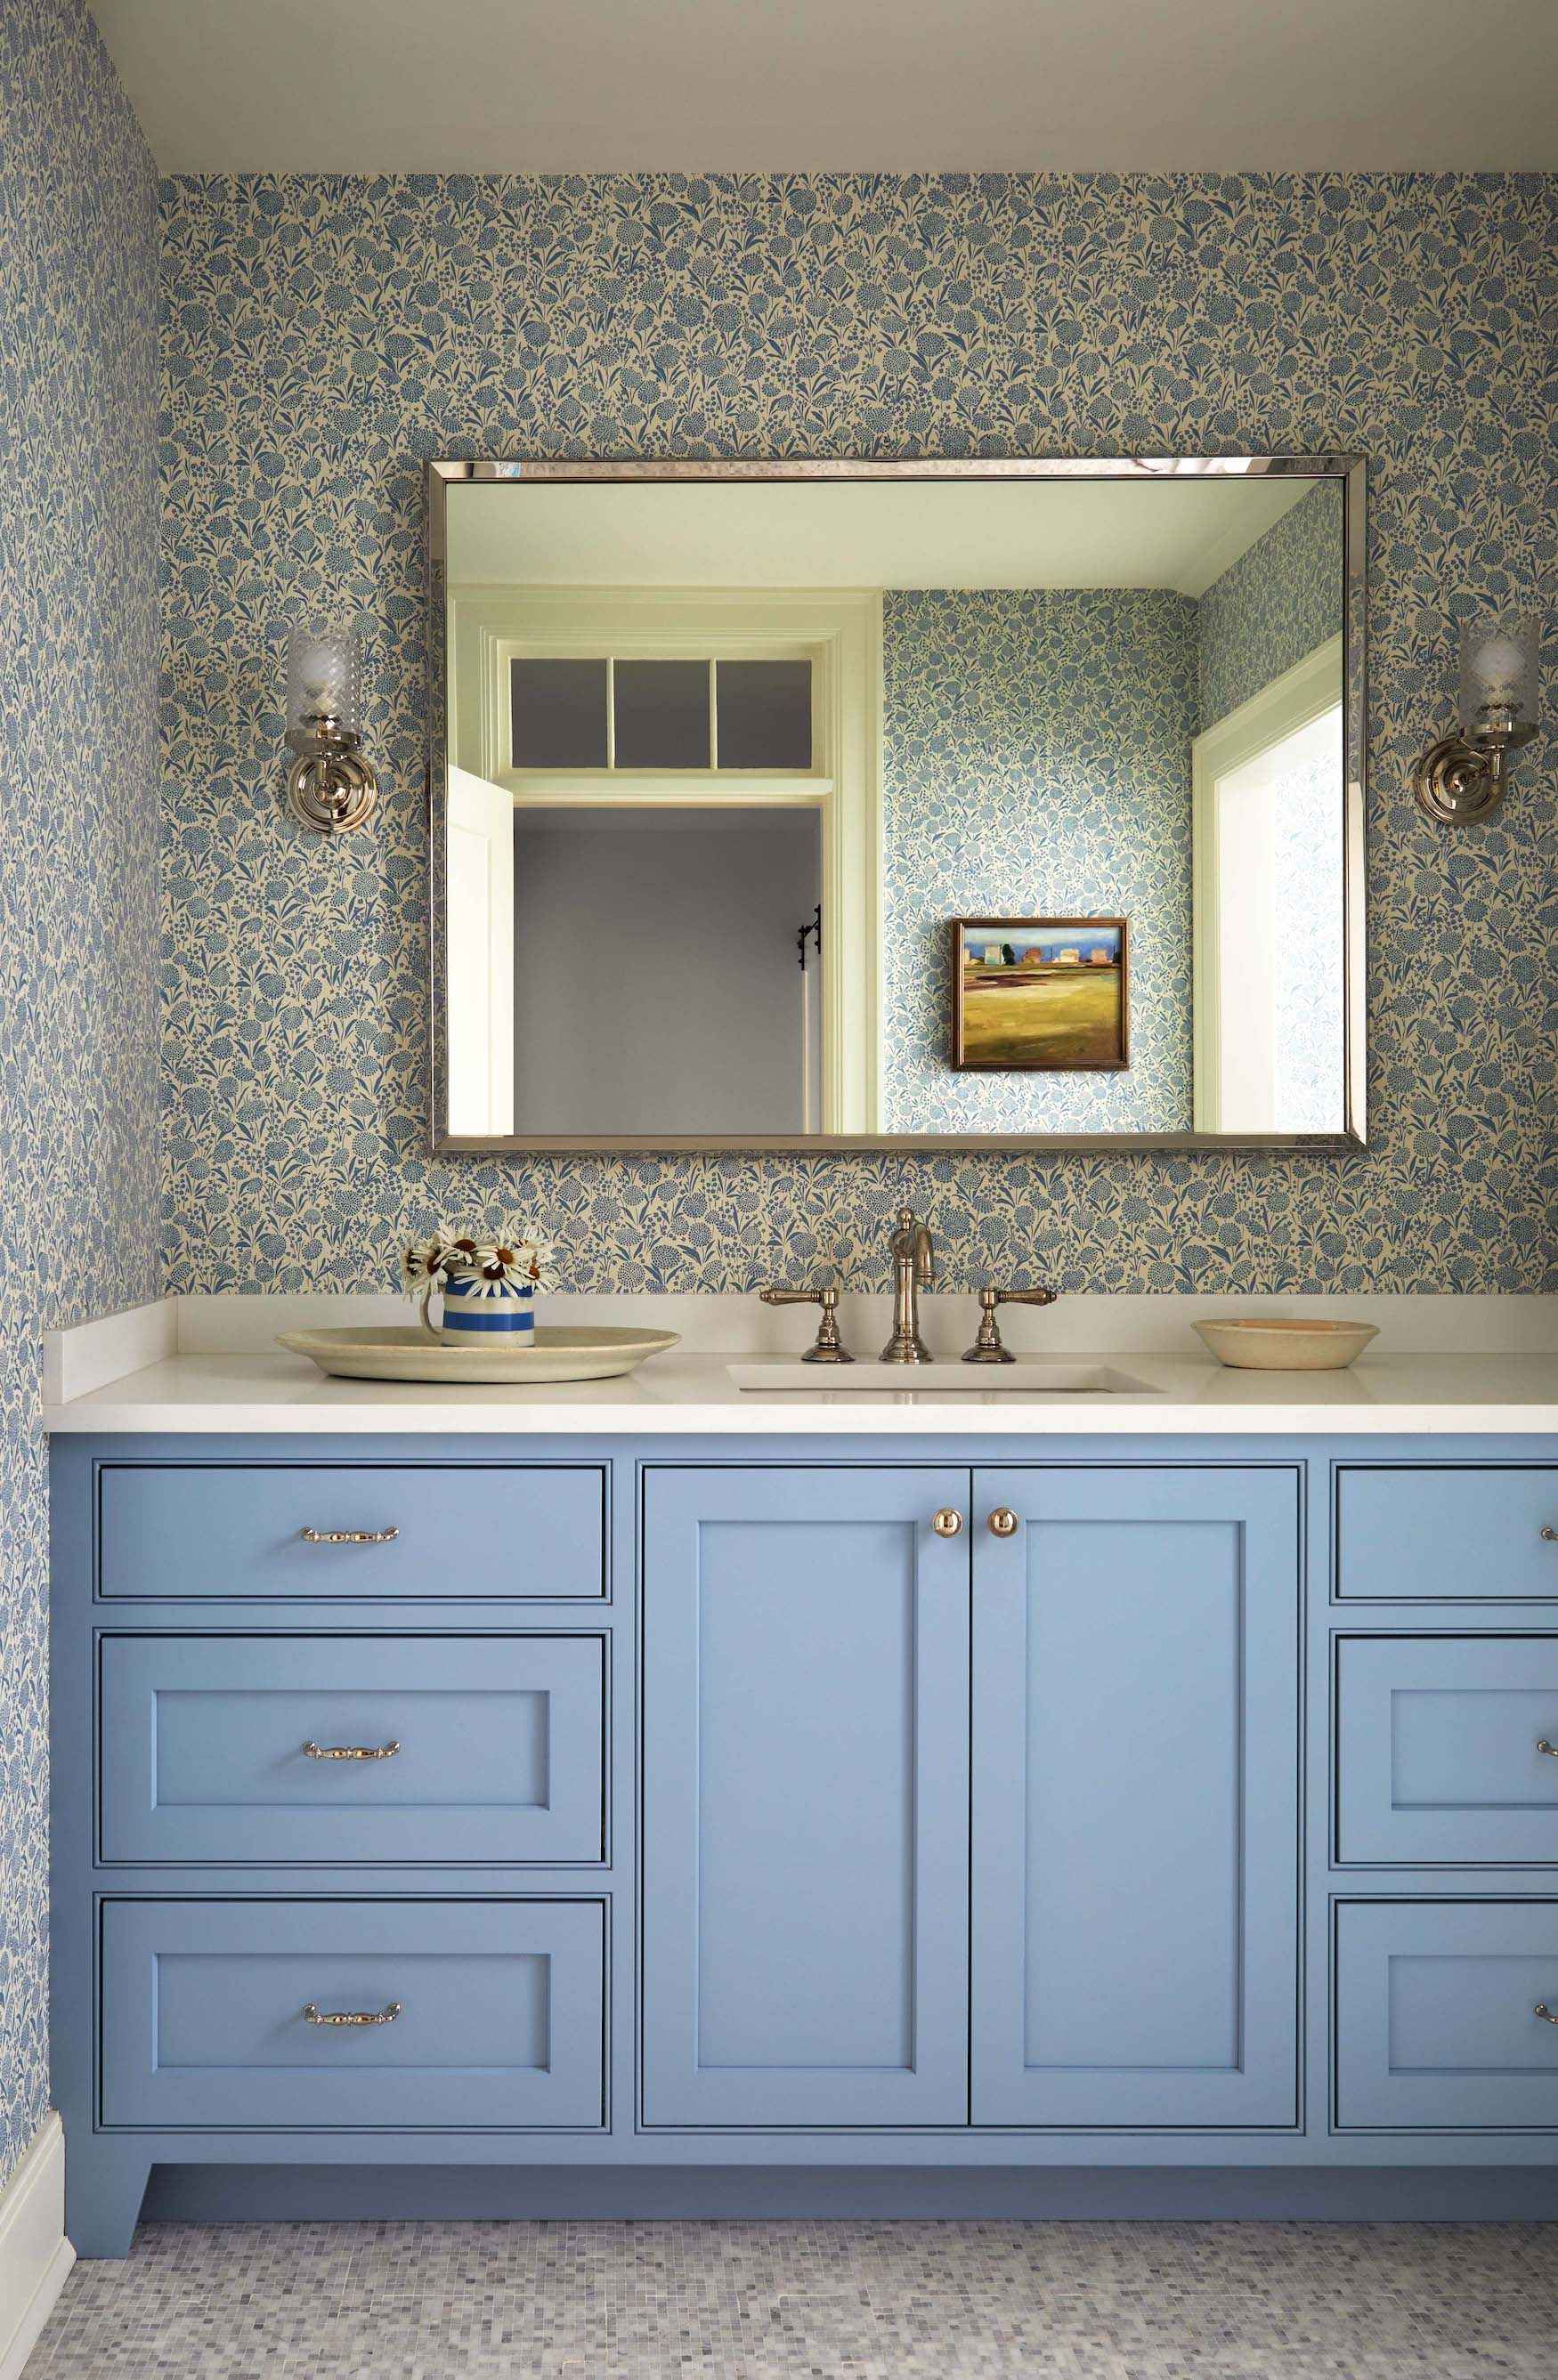 Best Selling Benjamin Moore Paint Colors  Blue bathroom paint, Bathroom  wall colors, Bathroom paint colors benjamin moore